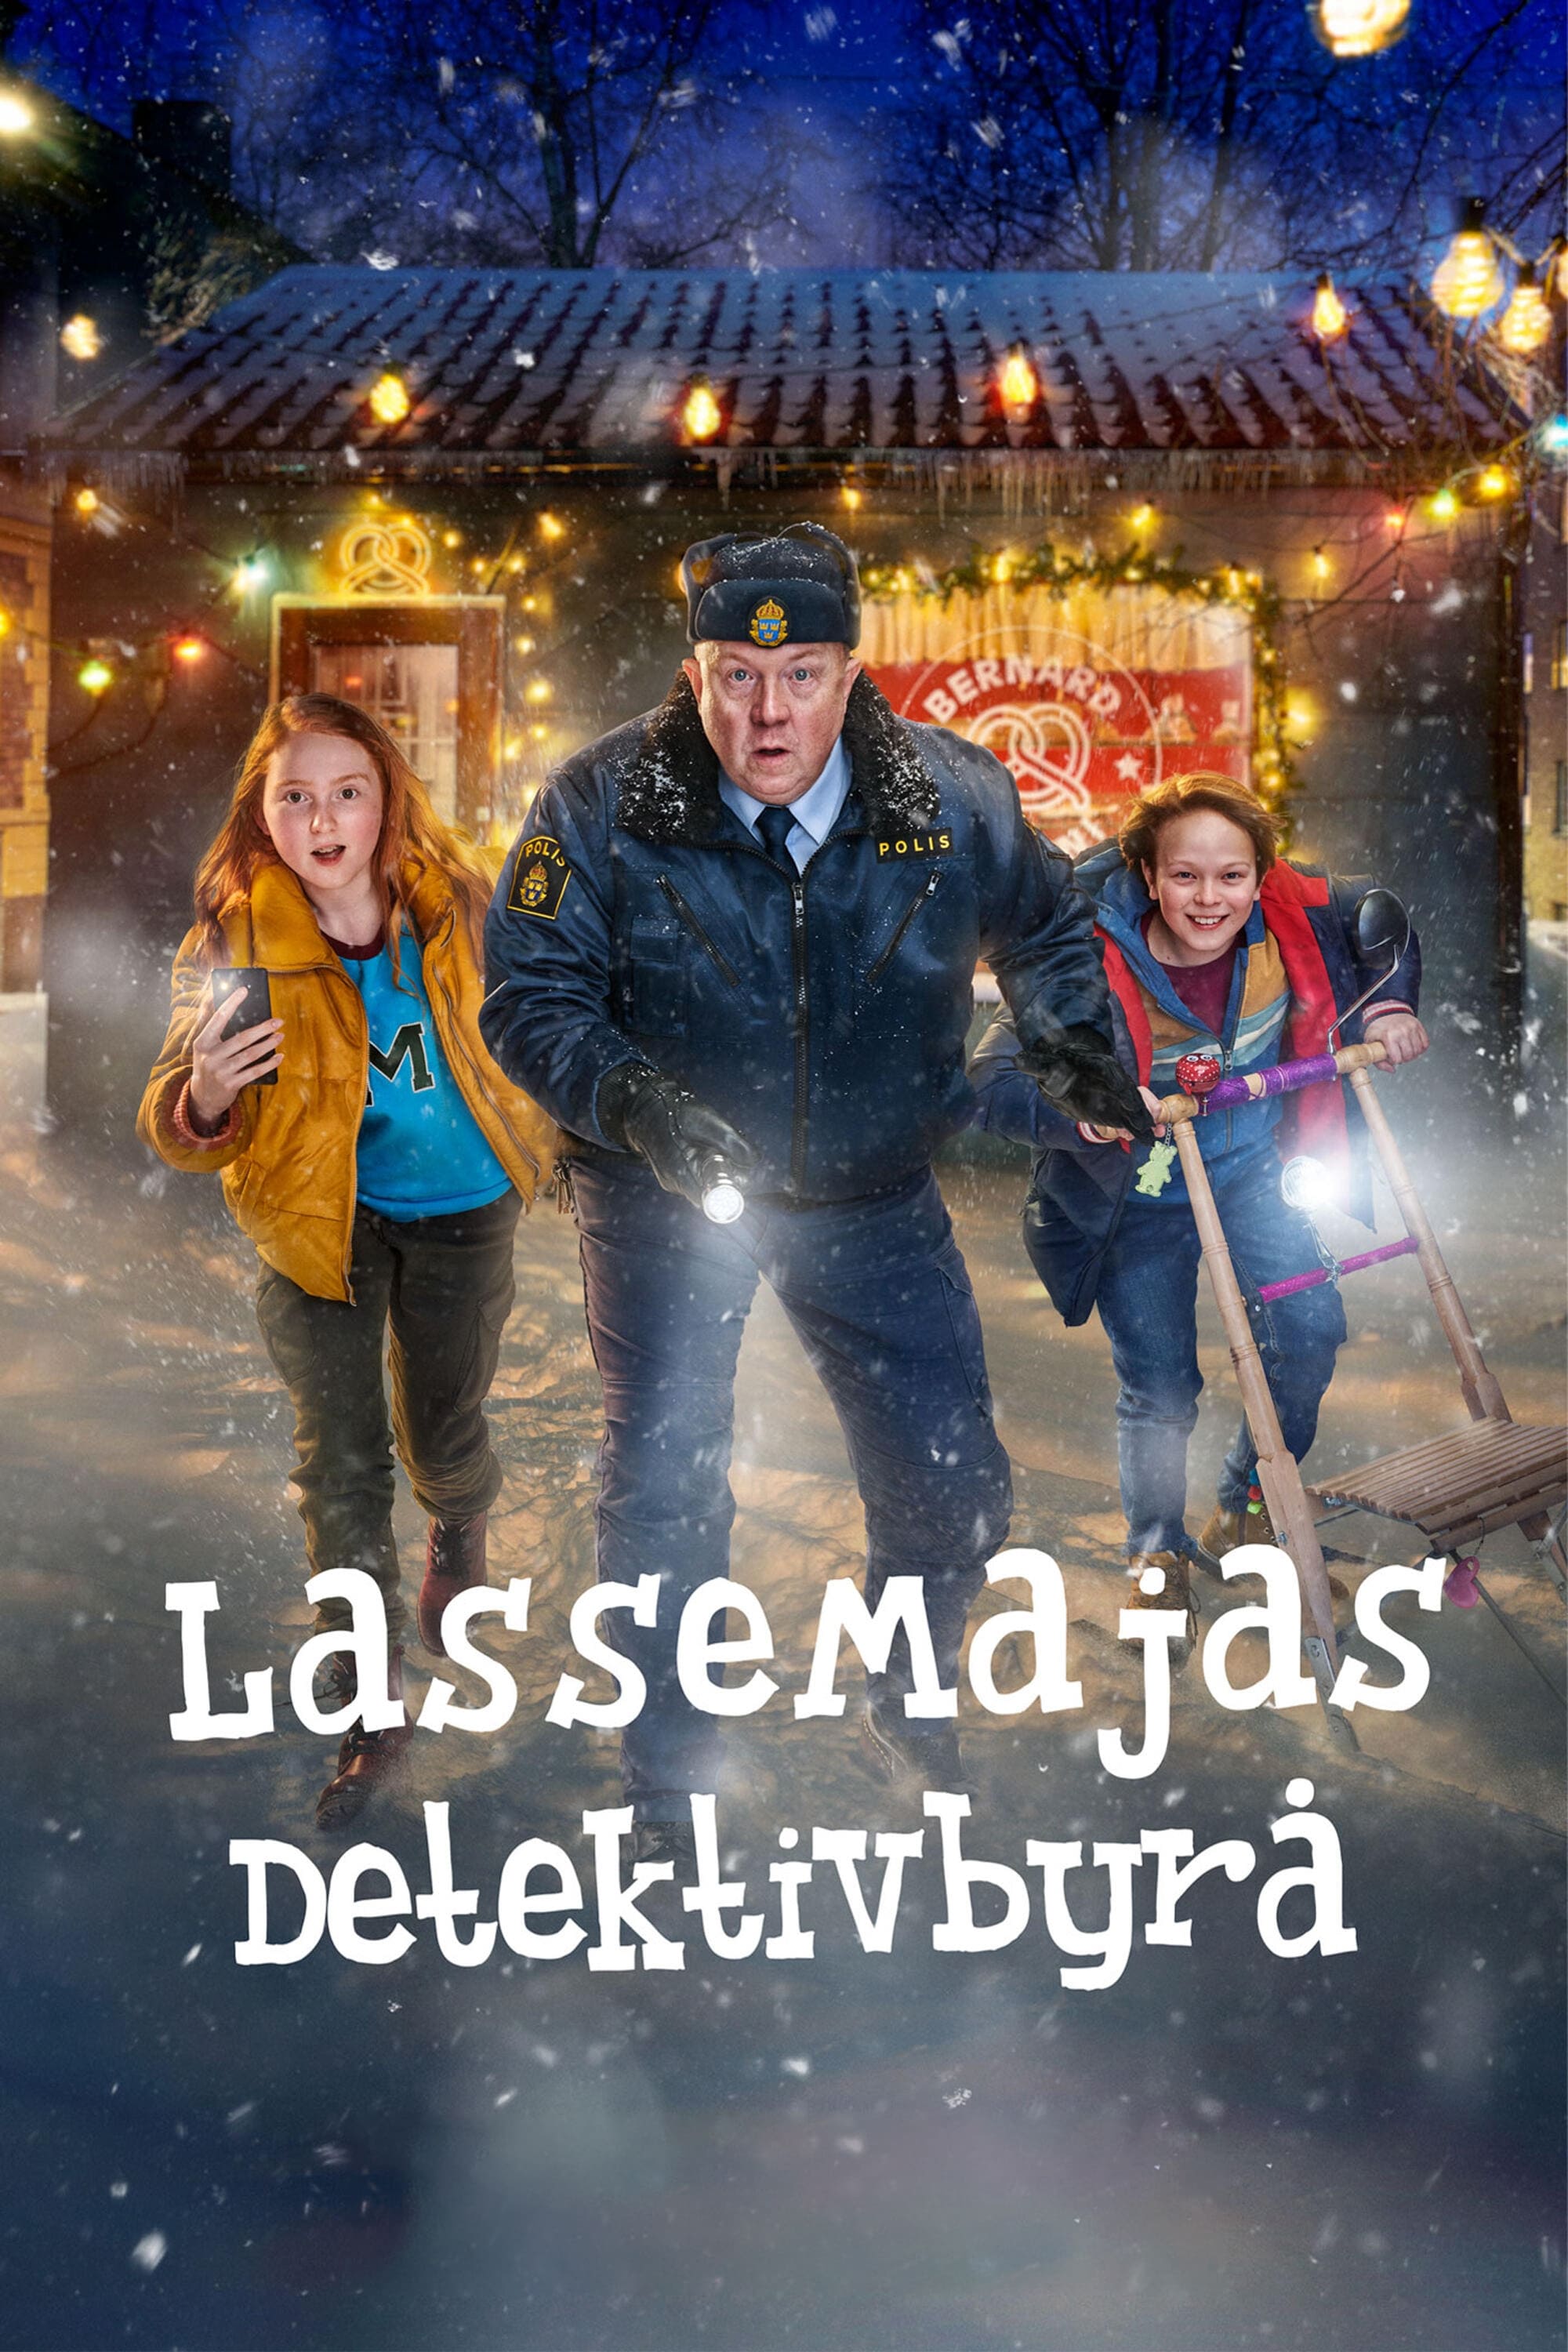 LasseMajas Detektivbyrå (2020)